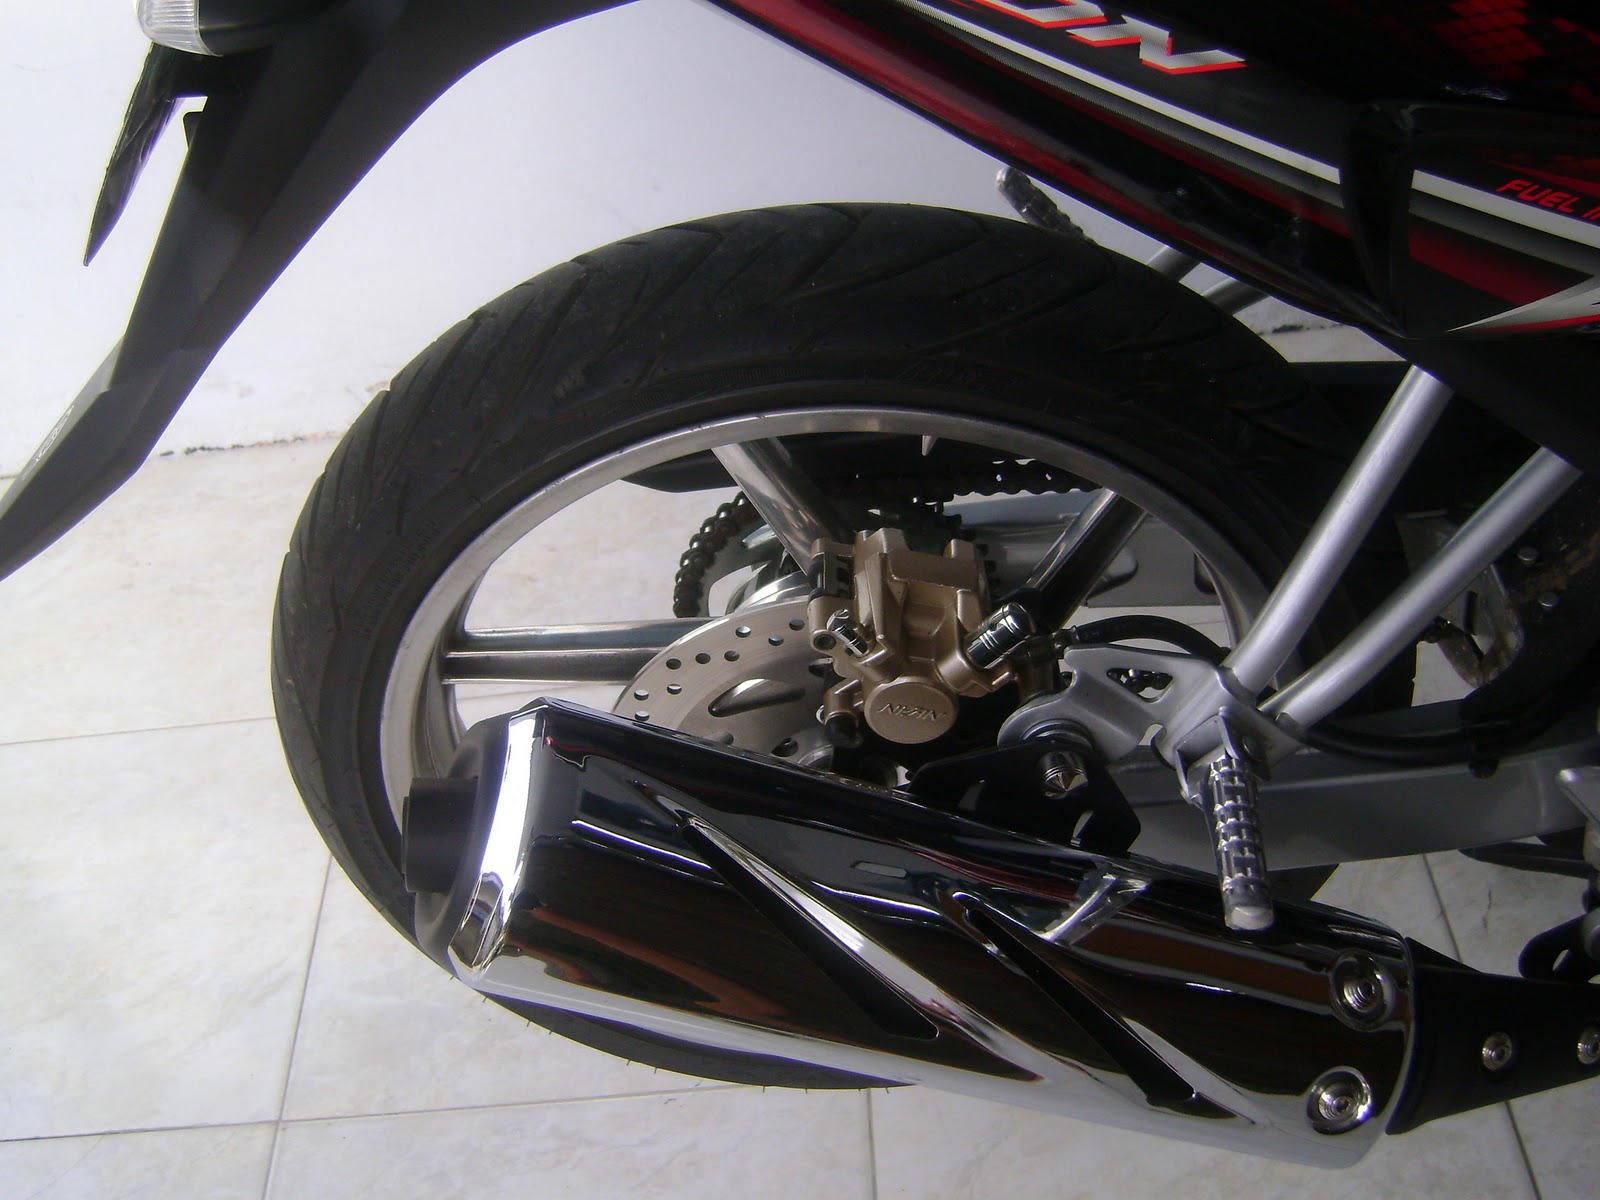 Modifikasi Motor: Modifikasi Minimalis Yamaha Vixion 2009